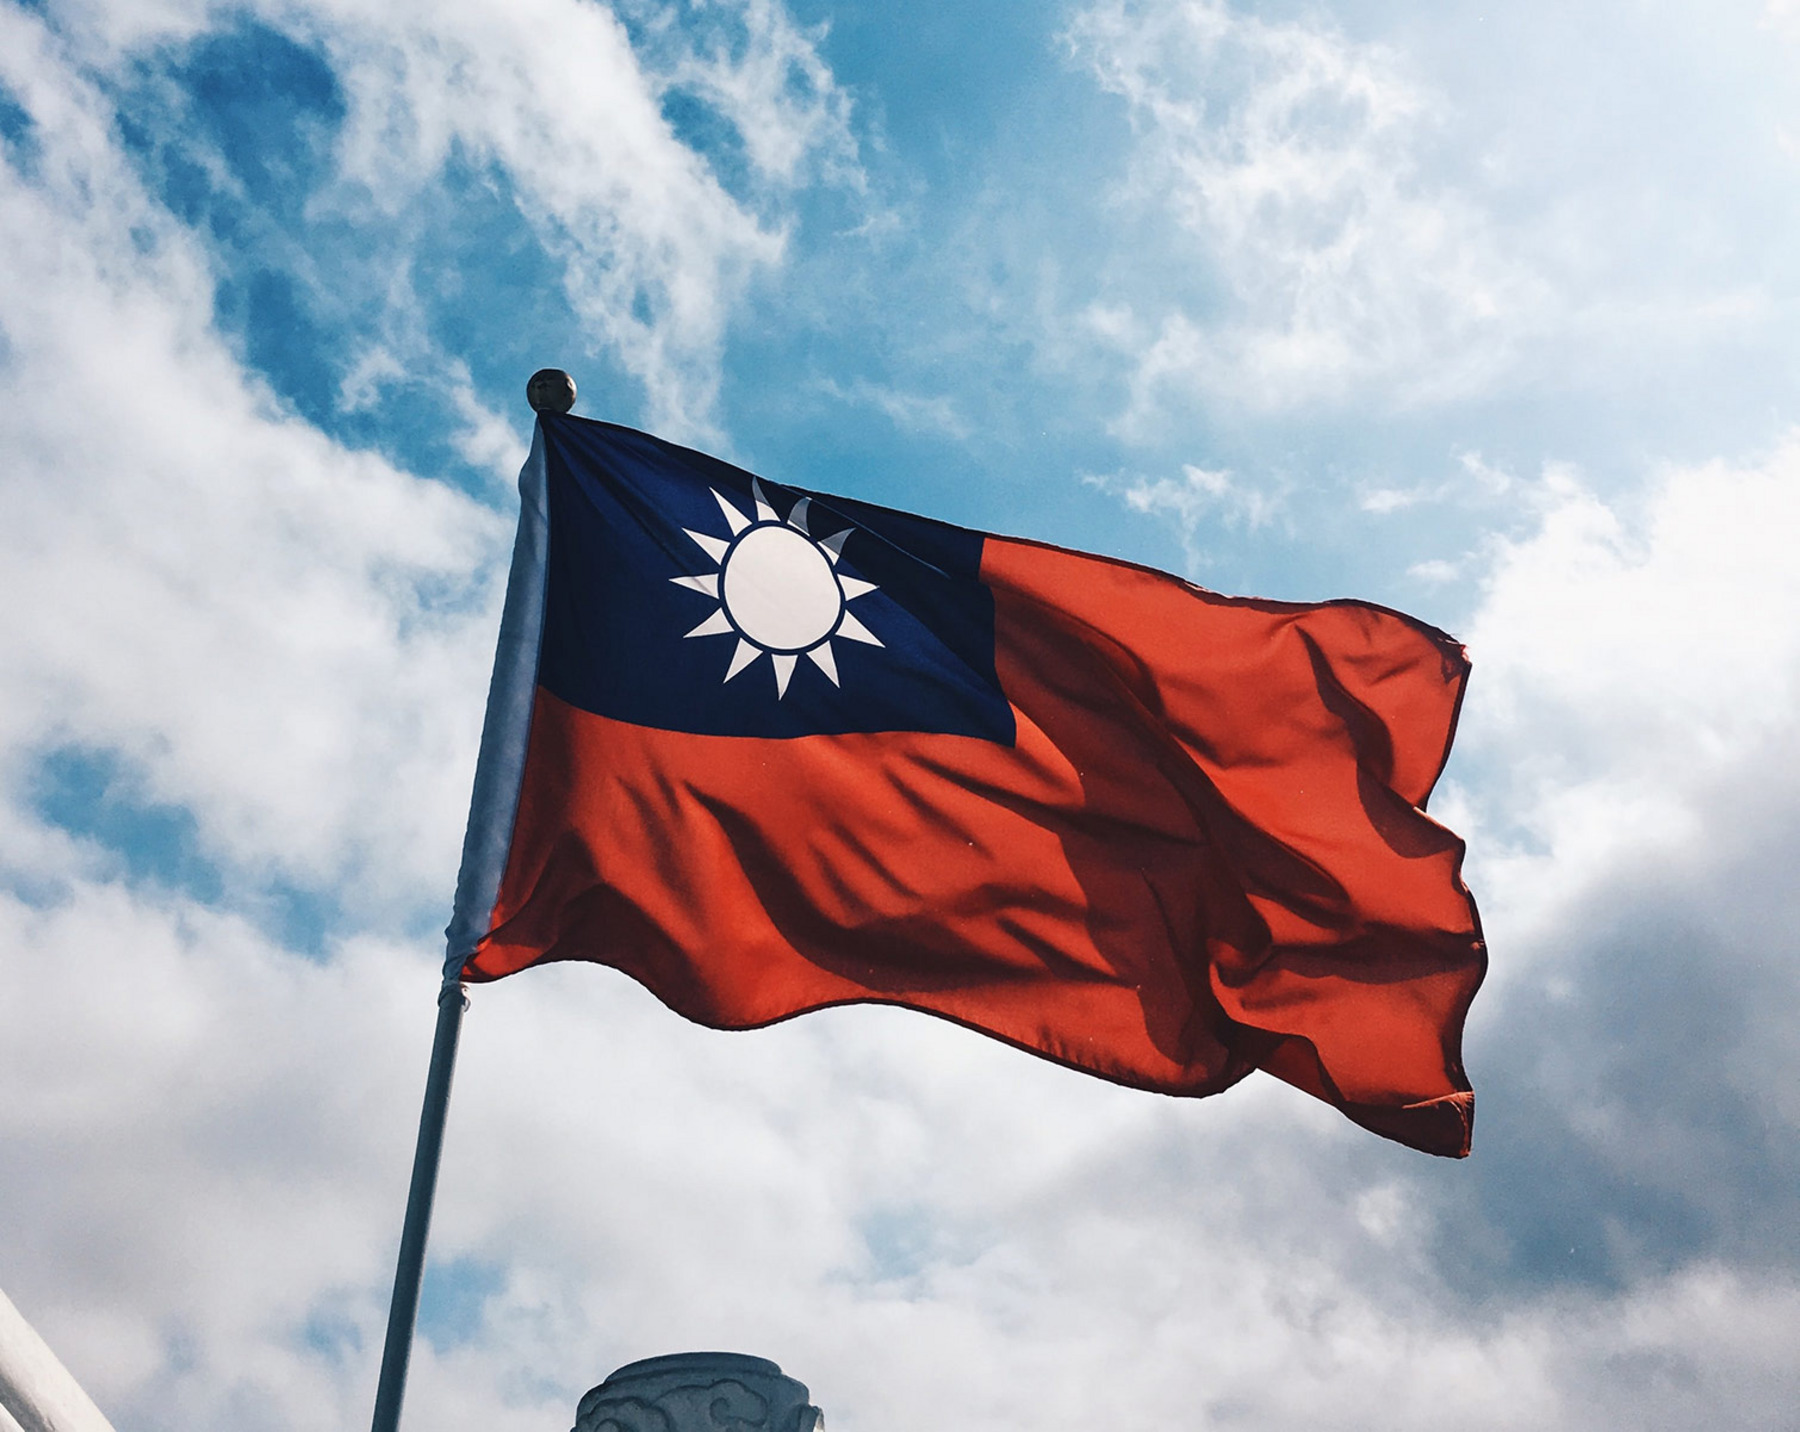 Die Flagge der Republik China weht im Wind vor einem strahlend blauen Himmel. Die Flagge ist rot mit einer weißen Sonne auf blauem Grund im oberen linken Viertel